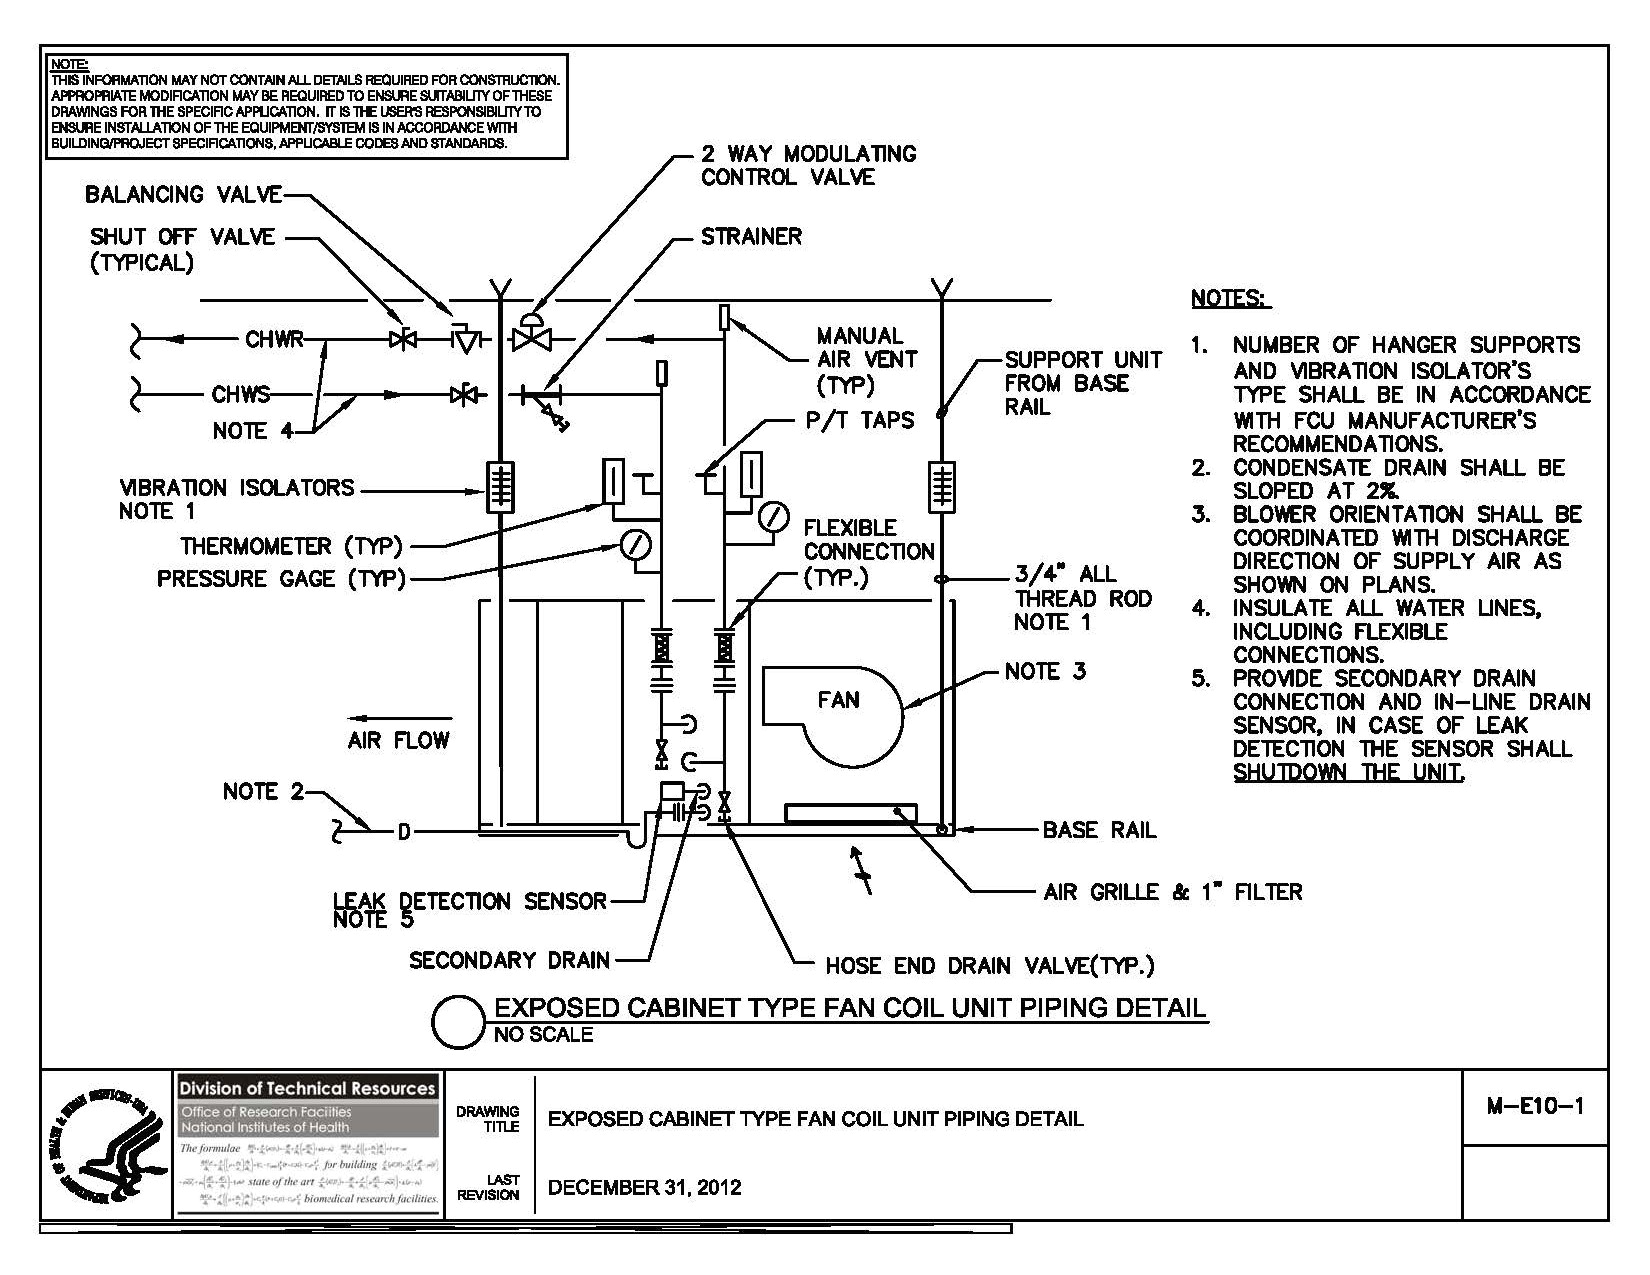 omron g7l 2a tubj cb wiring diagram omron g7l 2a tubj cb wiring diagram list fire pump piping diagram 4h jpg